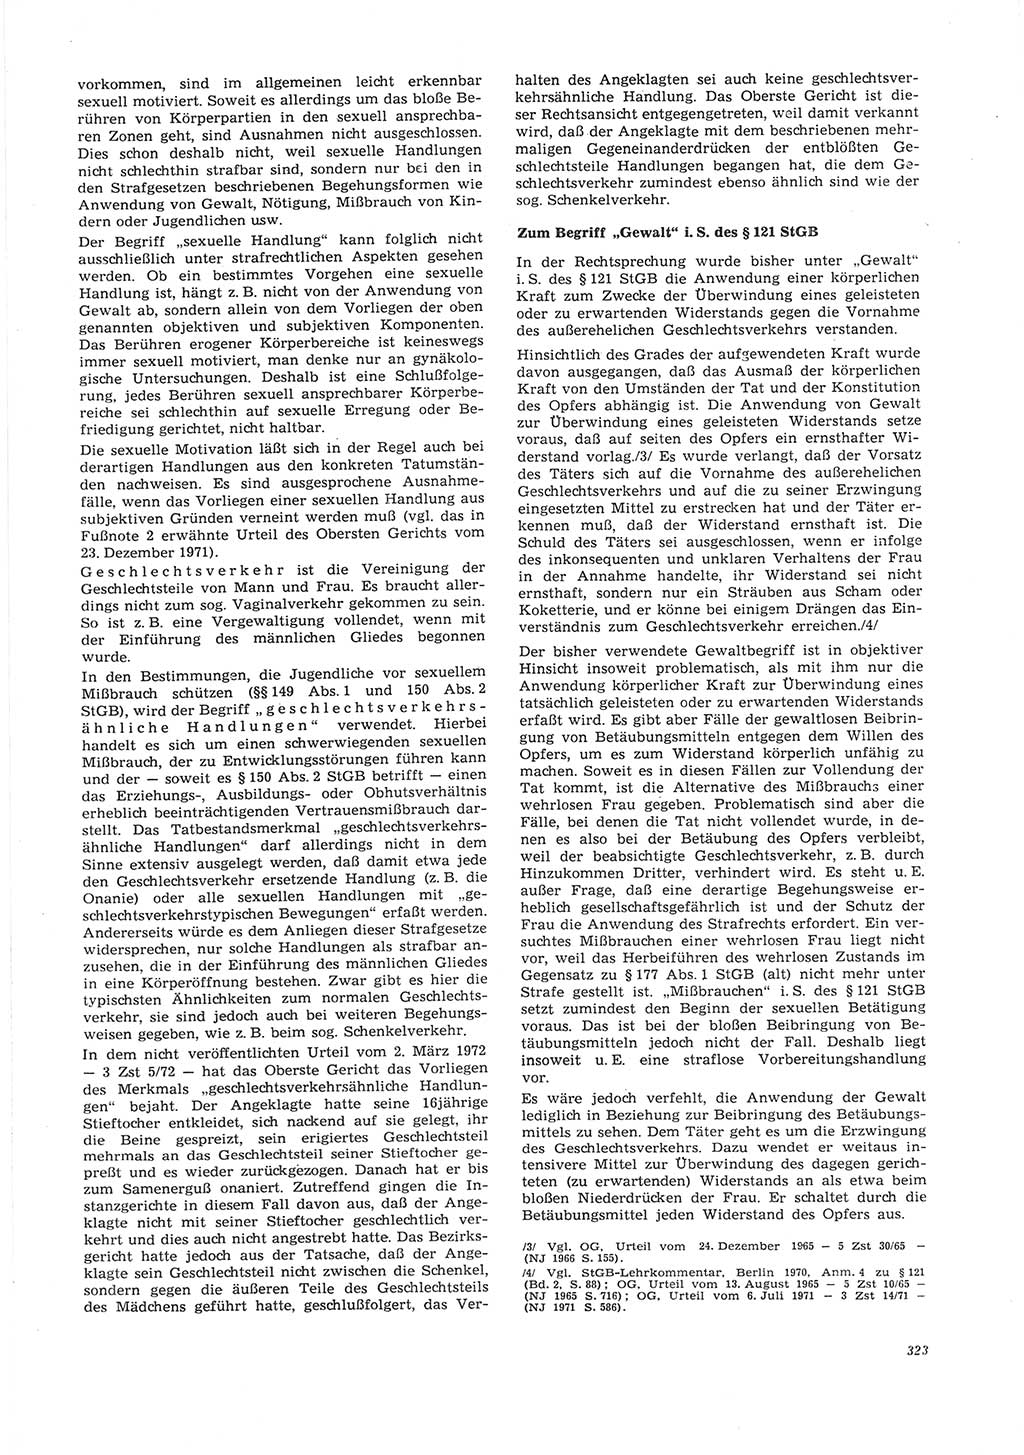 Neue Justiz (NJ), Zeitschrift für Recht und Rechtswissenschaft [Deutsche Demokratische Republik (DDR)], 26. Jahrgang 1972, Seite 323 (NJ DDR 1972, S. 323)